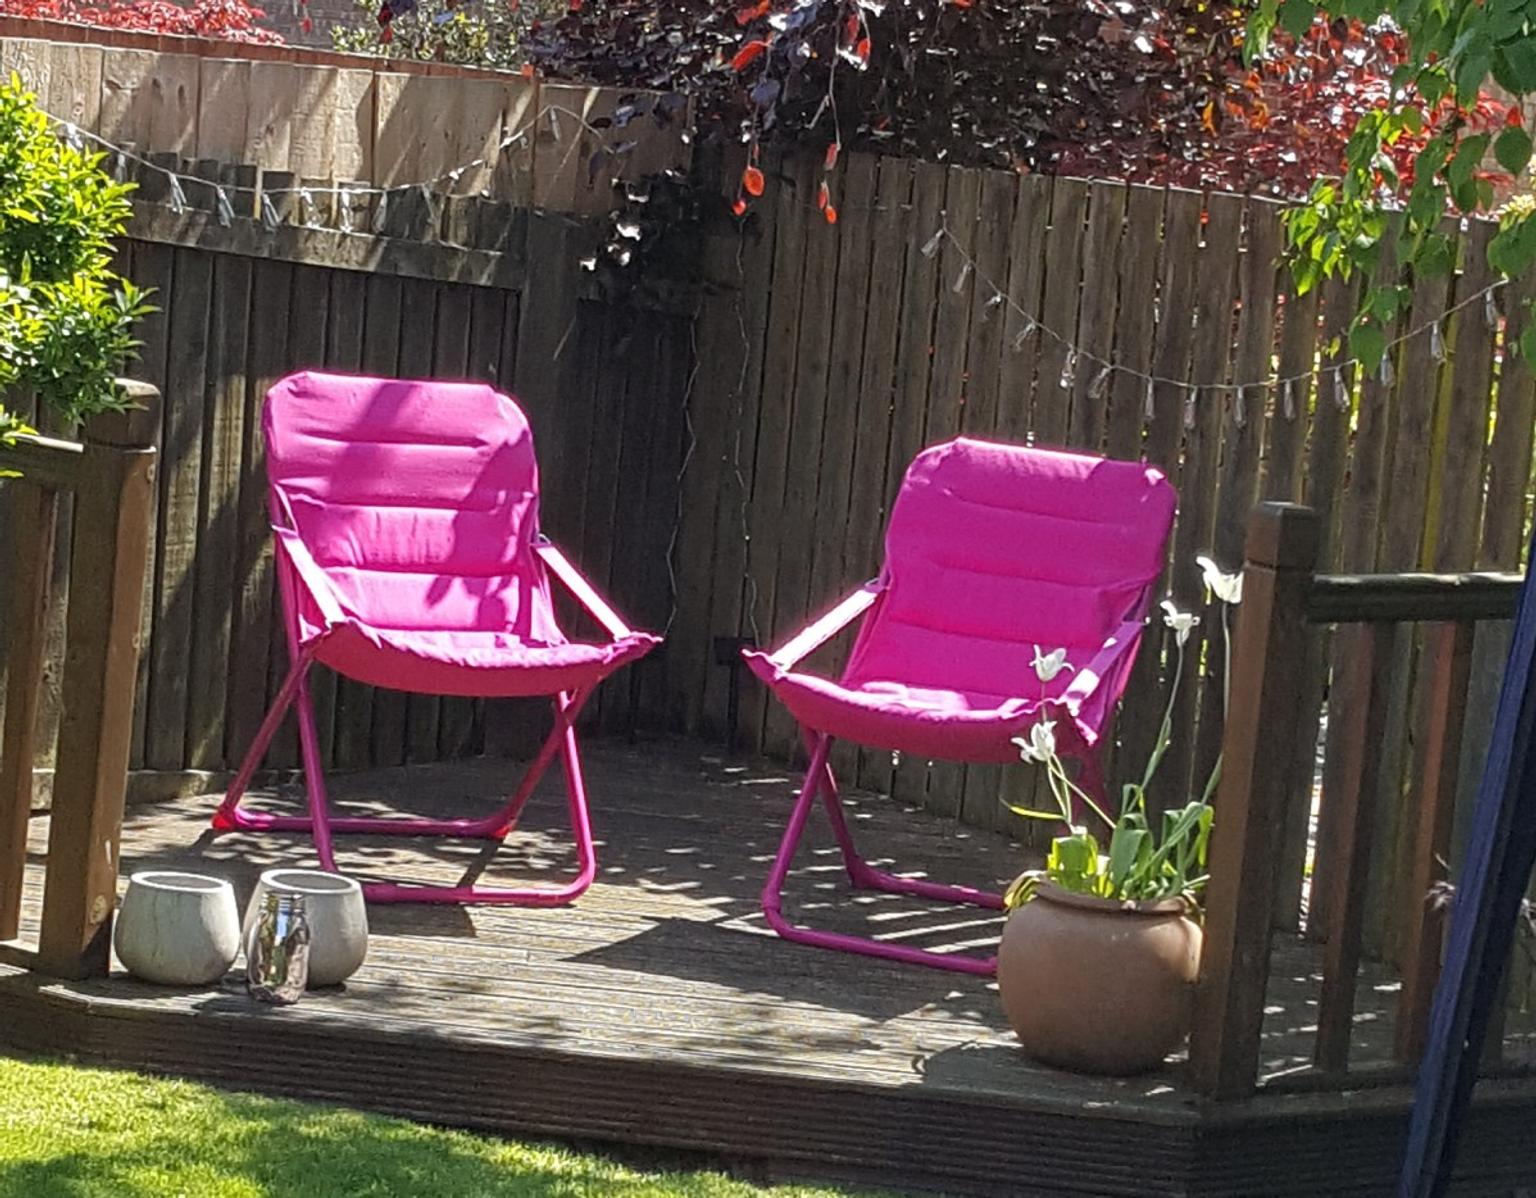 2 X Garden Deck Chairs In Hot Pink In Willington Fur 15 00 Zum